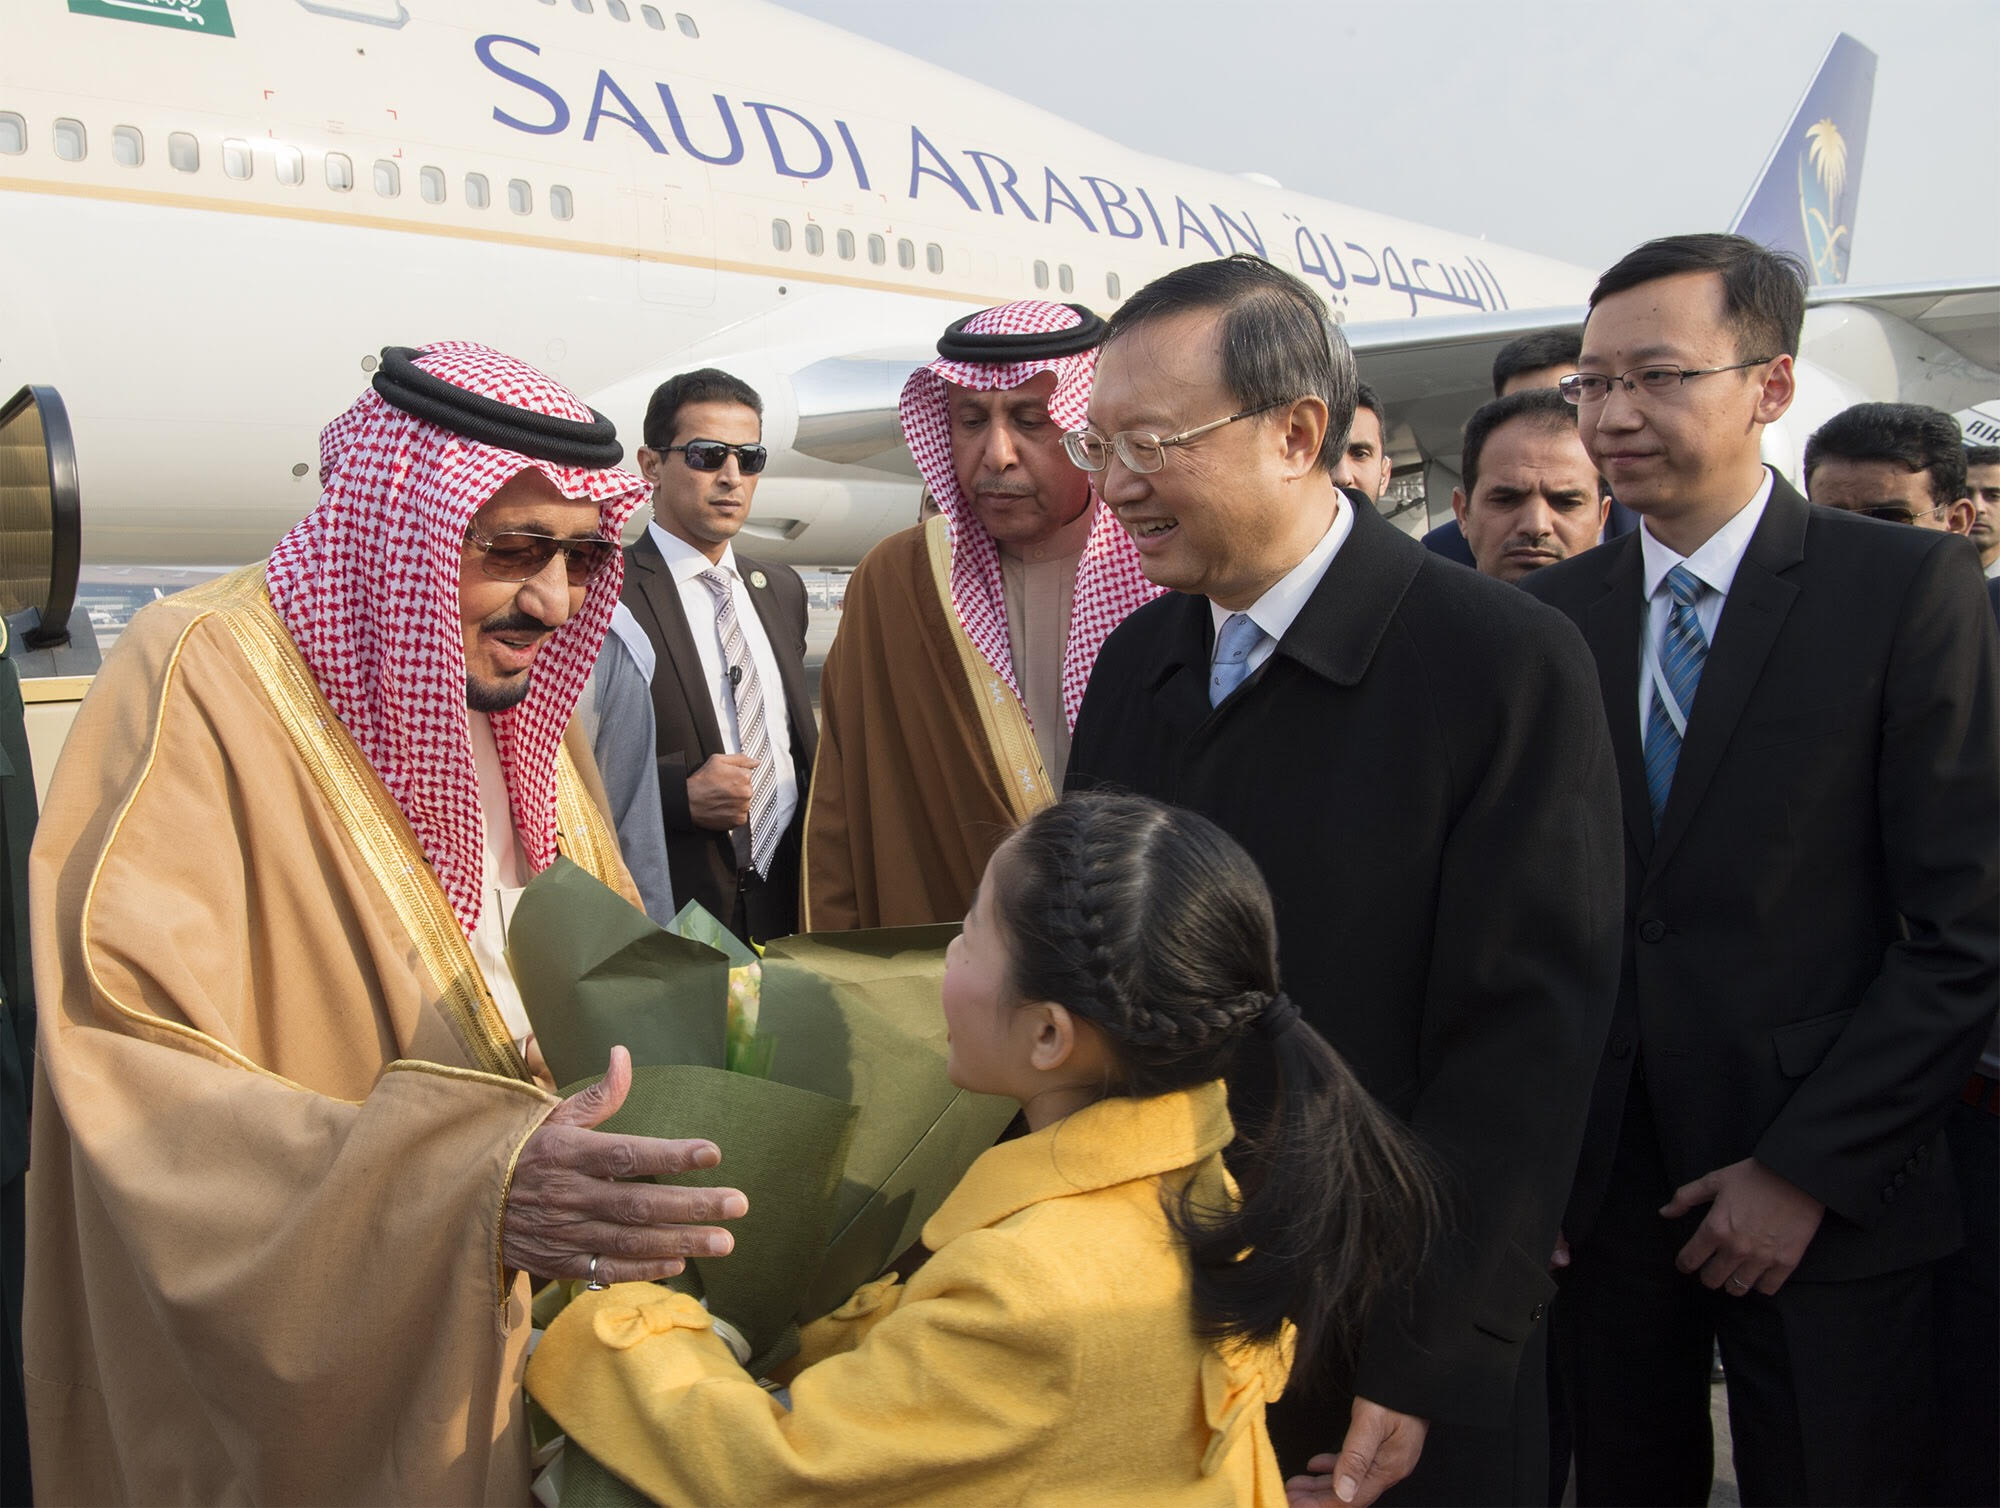 السعودية والصين .. اتفاقيات ثنائية وزيارات متبادلة تعكس عمق العلاقات التاريخية